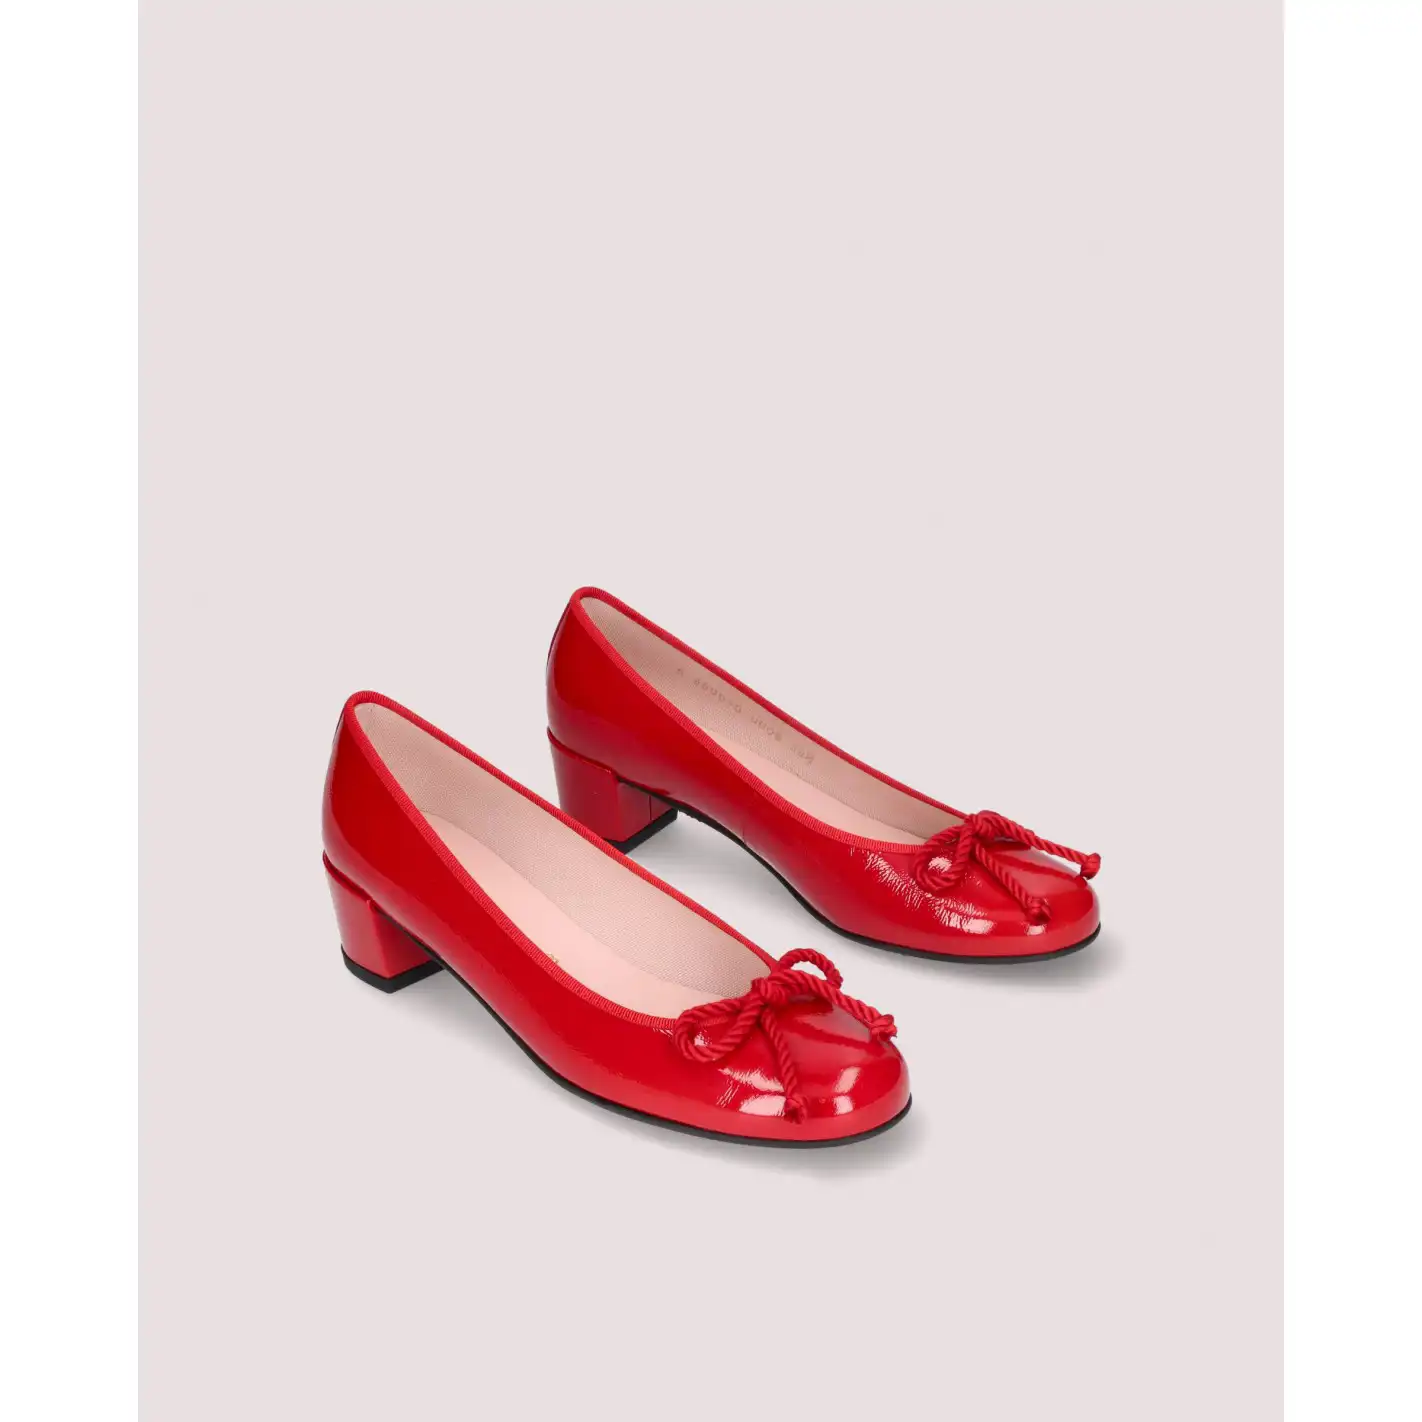 Los zapatos de estilo bailarina perfectos para sumarte al 'pop of red'. 